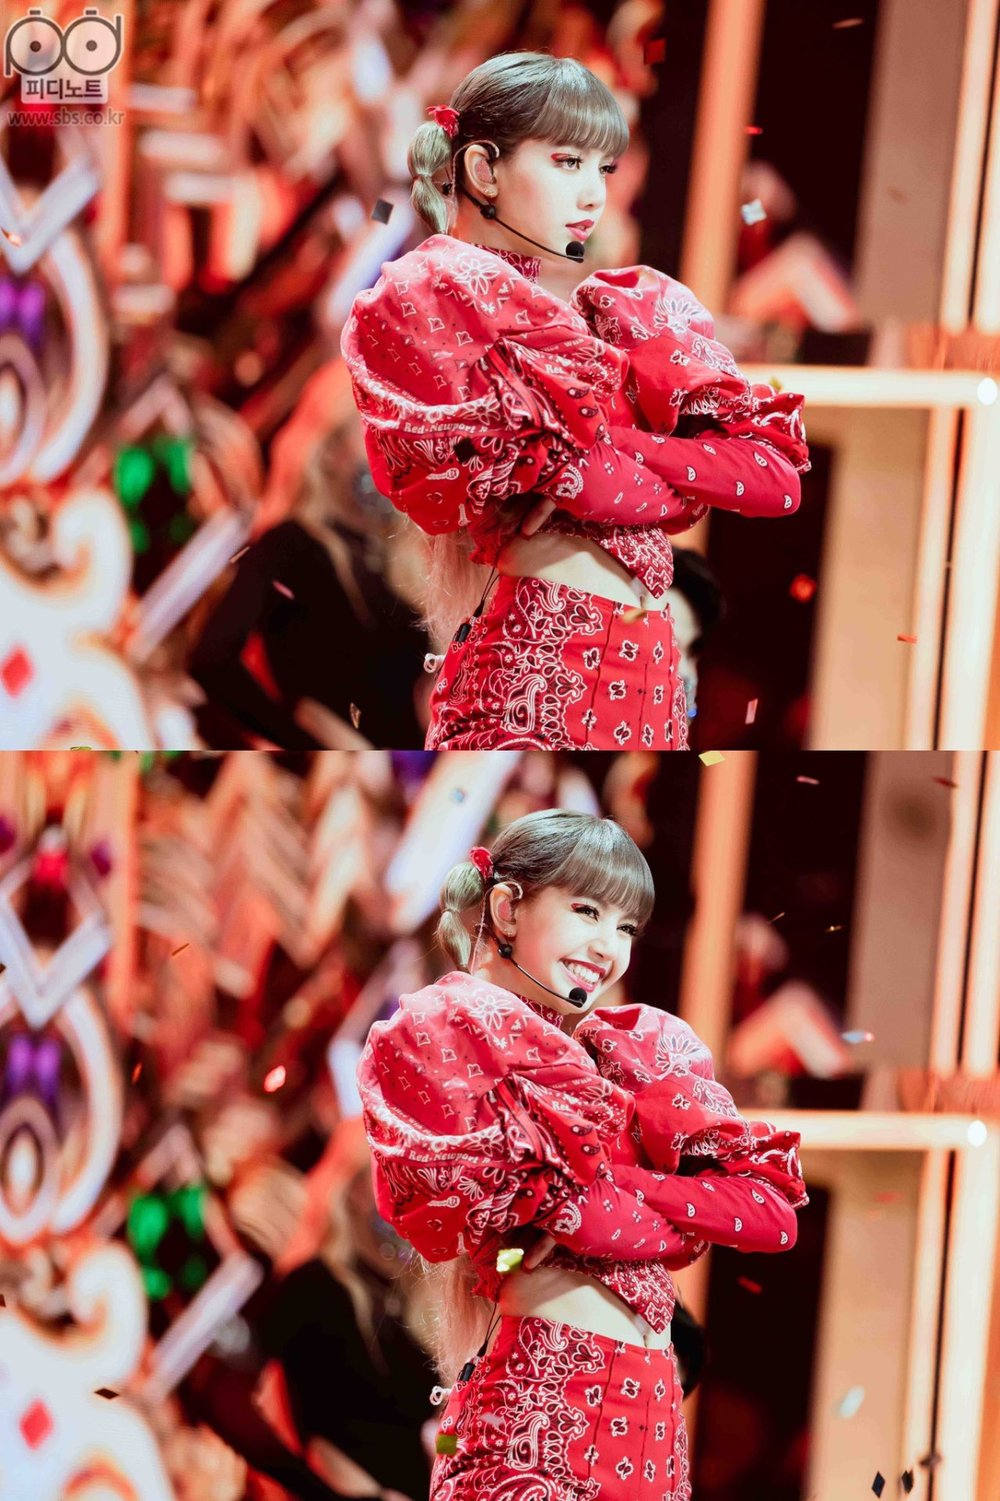  
Không hẹn mà gặp, Lisa cũng lựa chọn sắc đỏ cho sân khấu debut solo tại Hàn giống Jennie. (Ảnh: SBS)